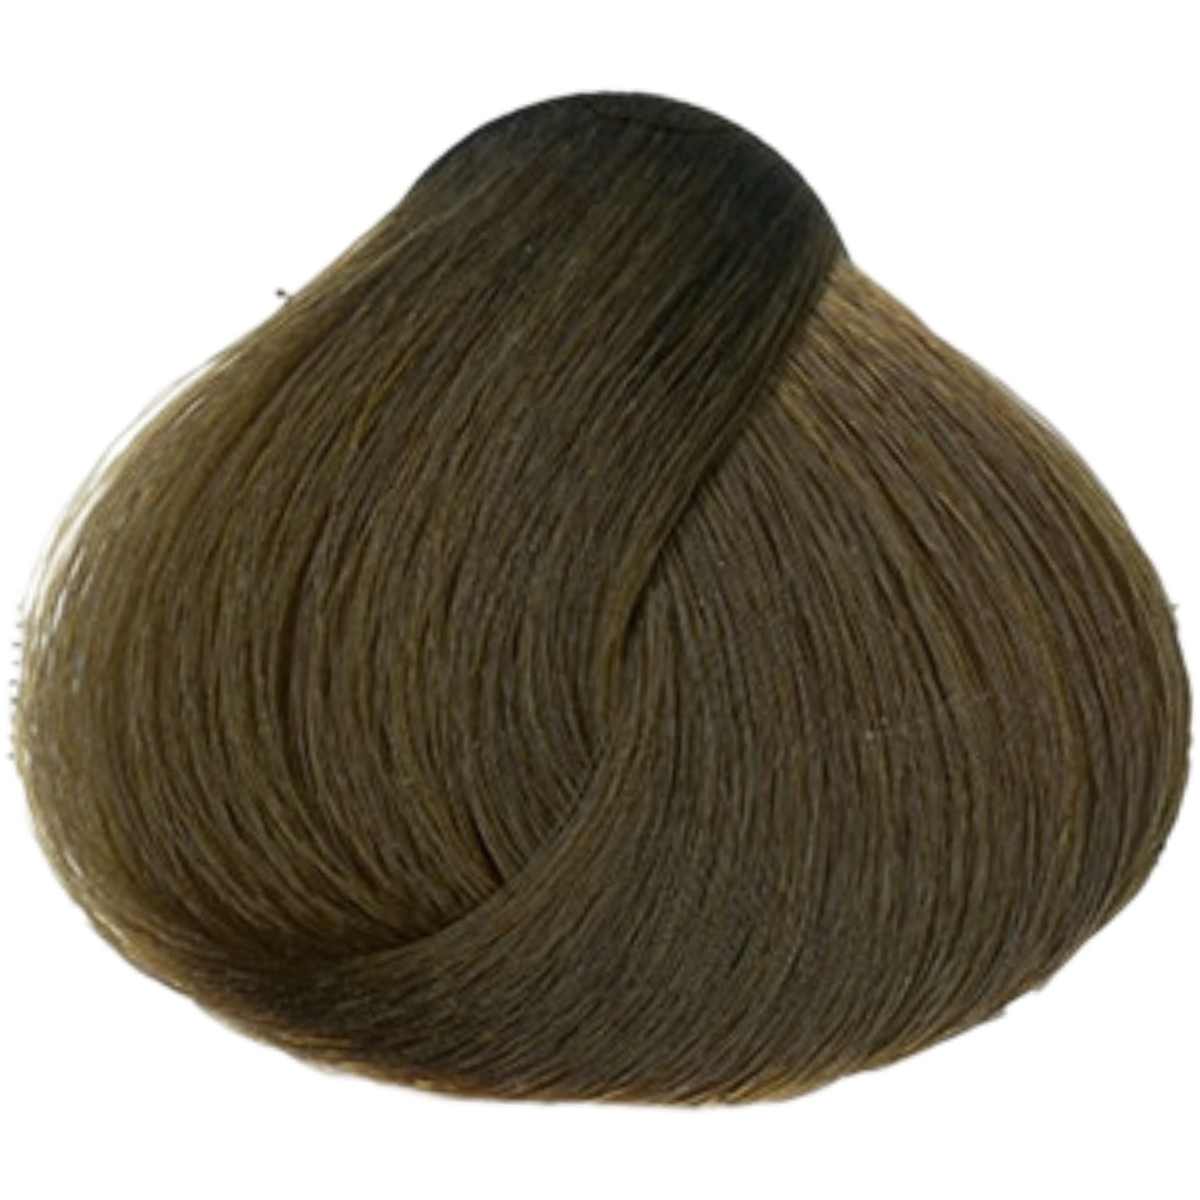 צבע שיער 7.13 BEIGE BLONDE פארמויטה FarmaVita צבע לשיער 60 גרם